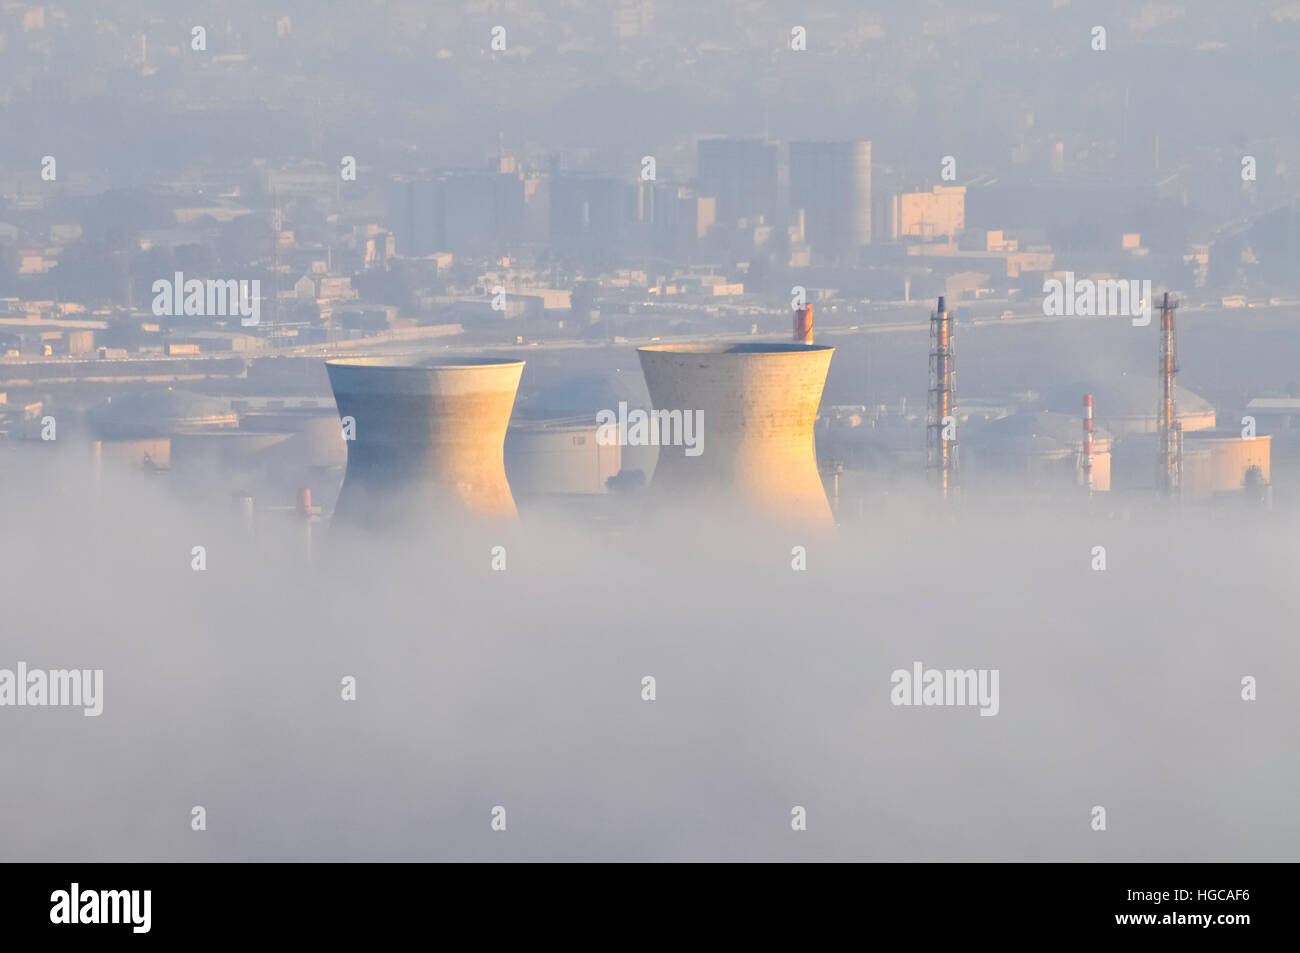 L'usine pétrochimique et de raffinerie de pétrole dans la fumée et le smog. Photographié dans la baie de Haïfa, Israël Banque D'Images